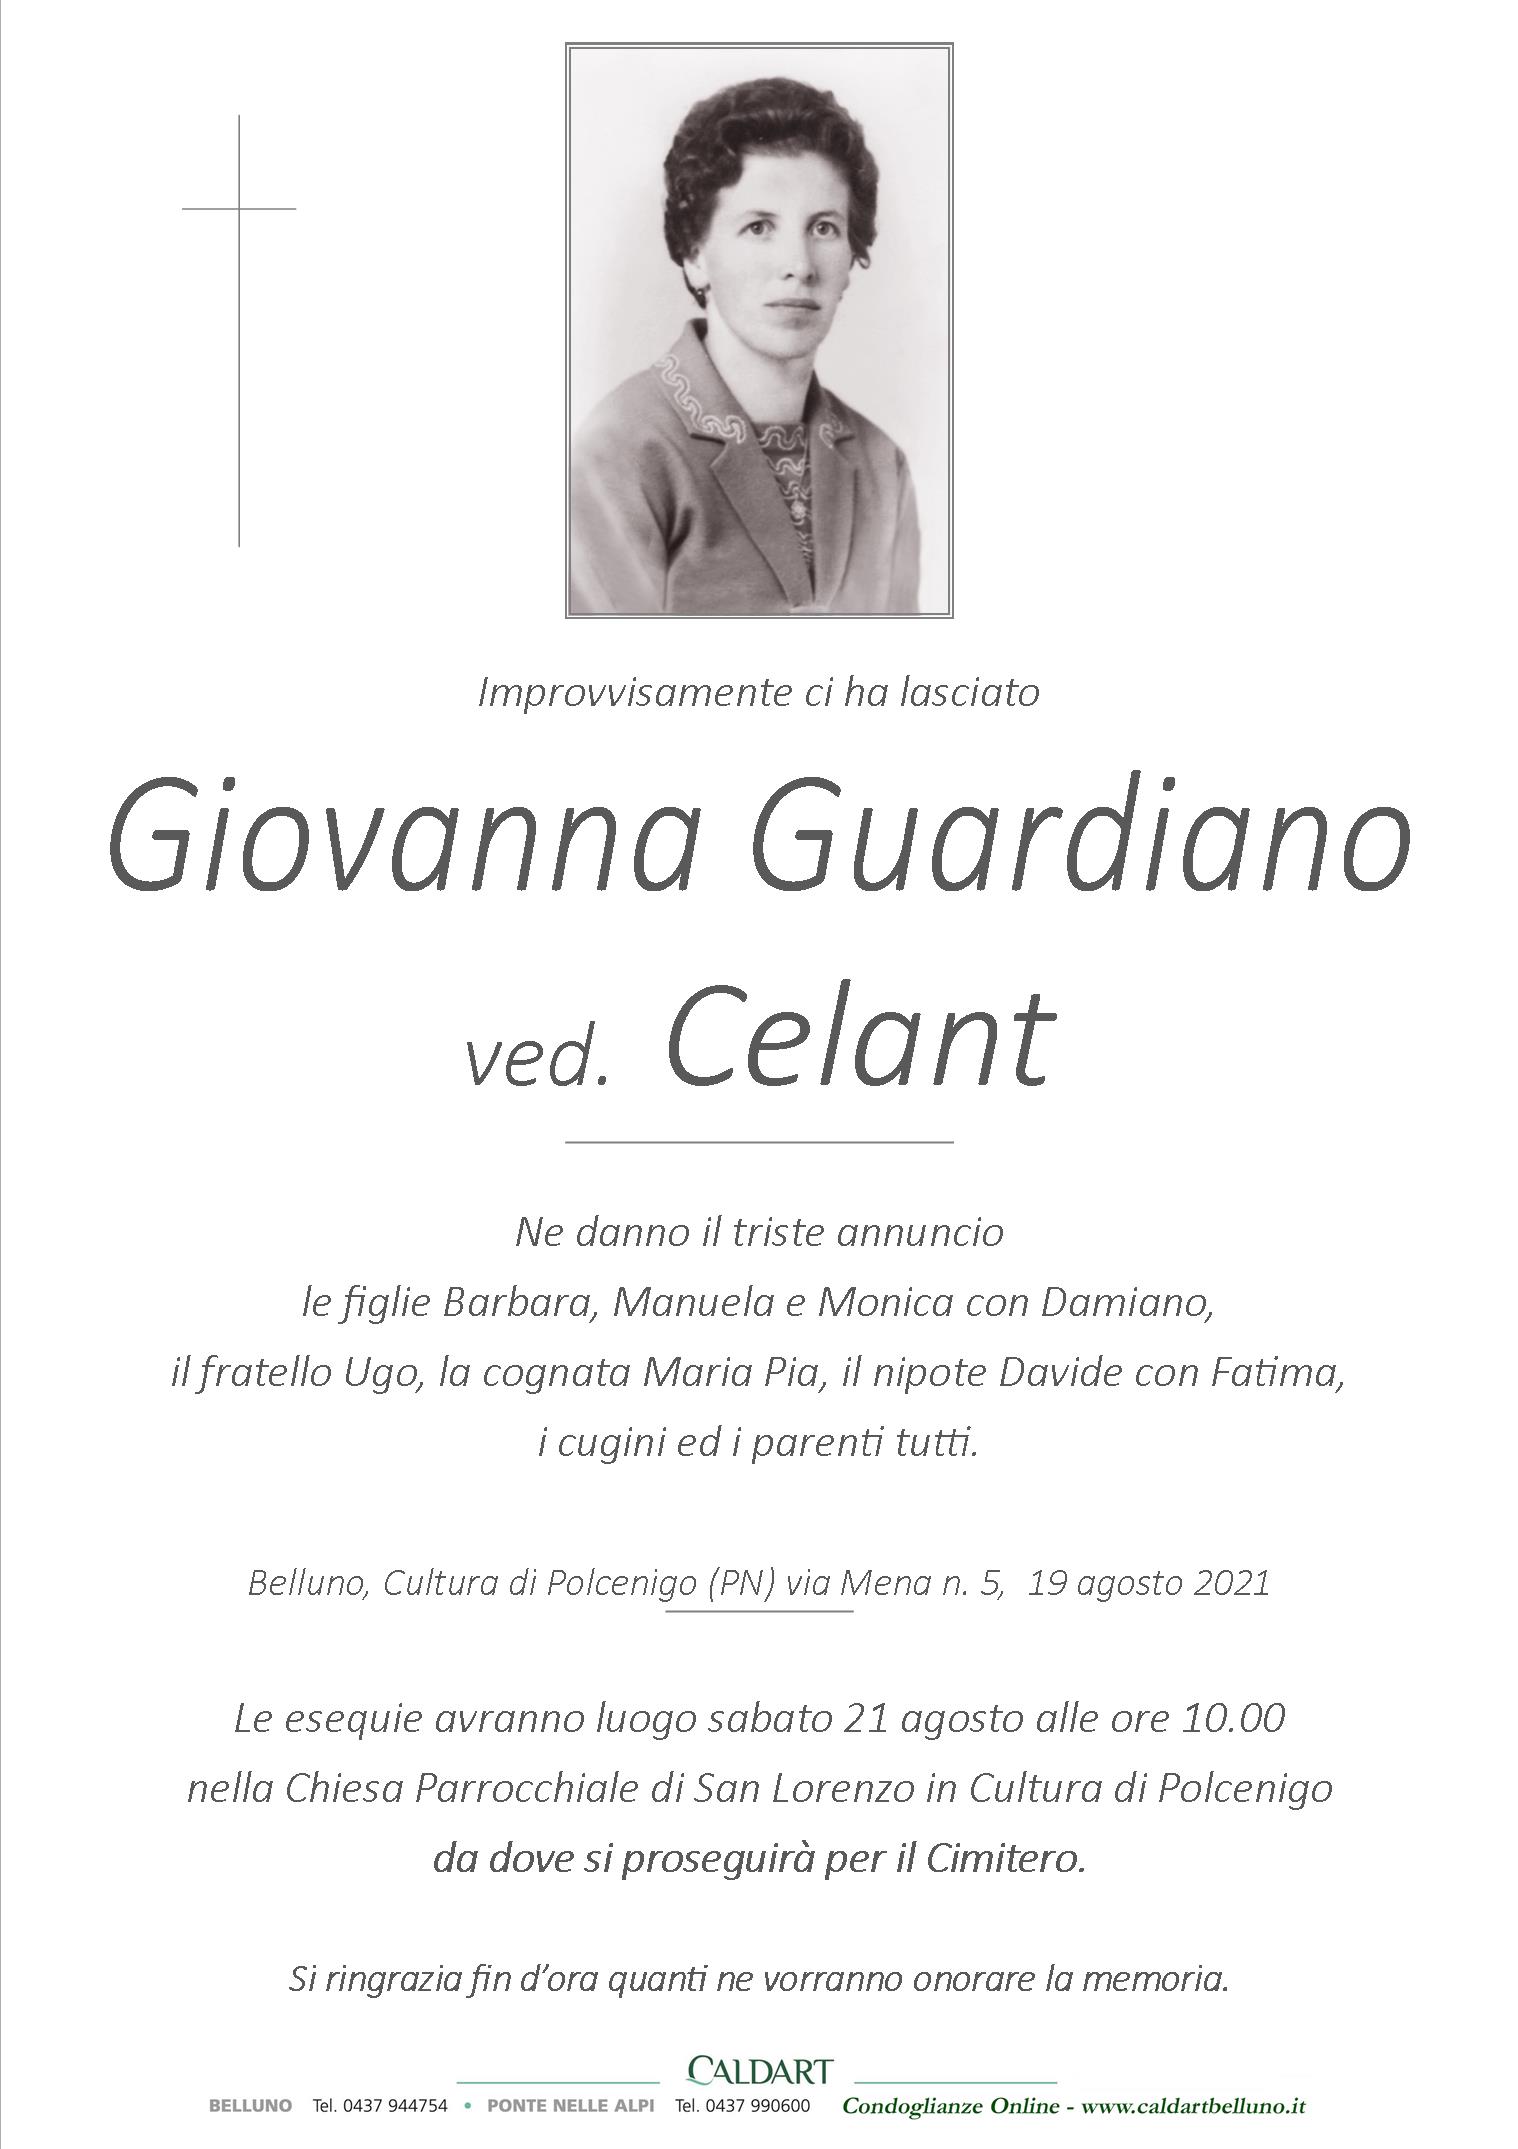 Guardiano Giovanna